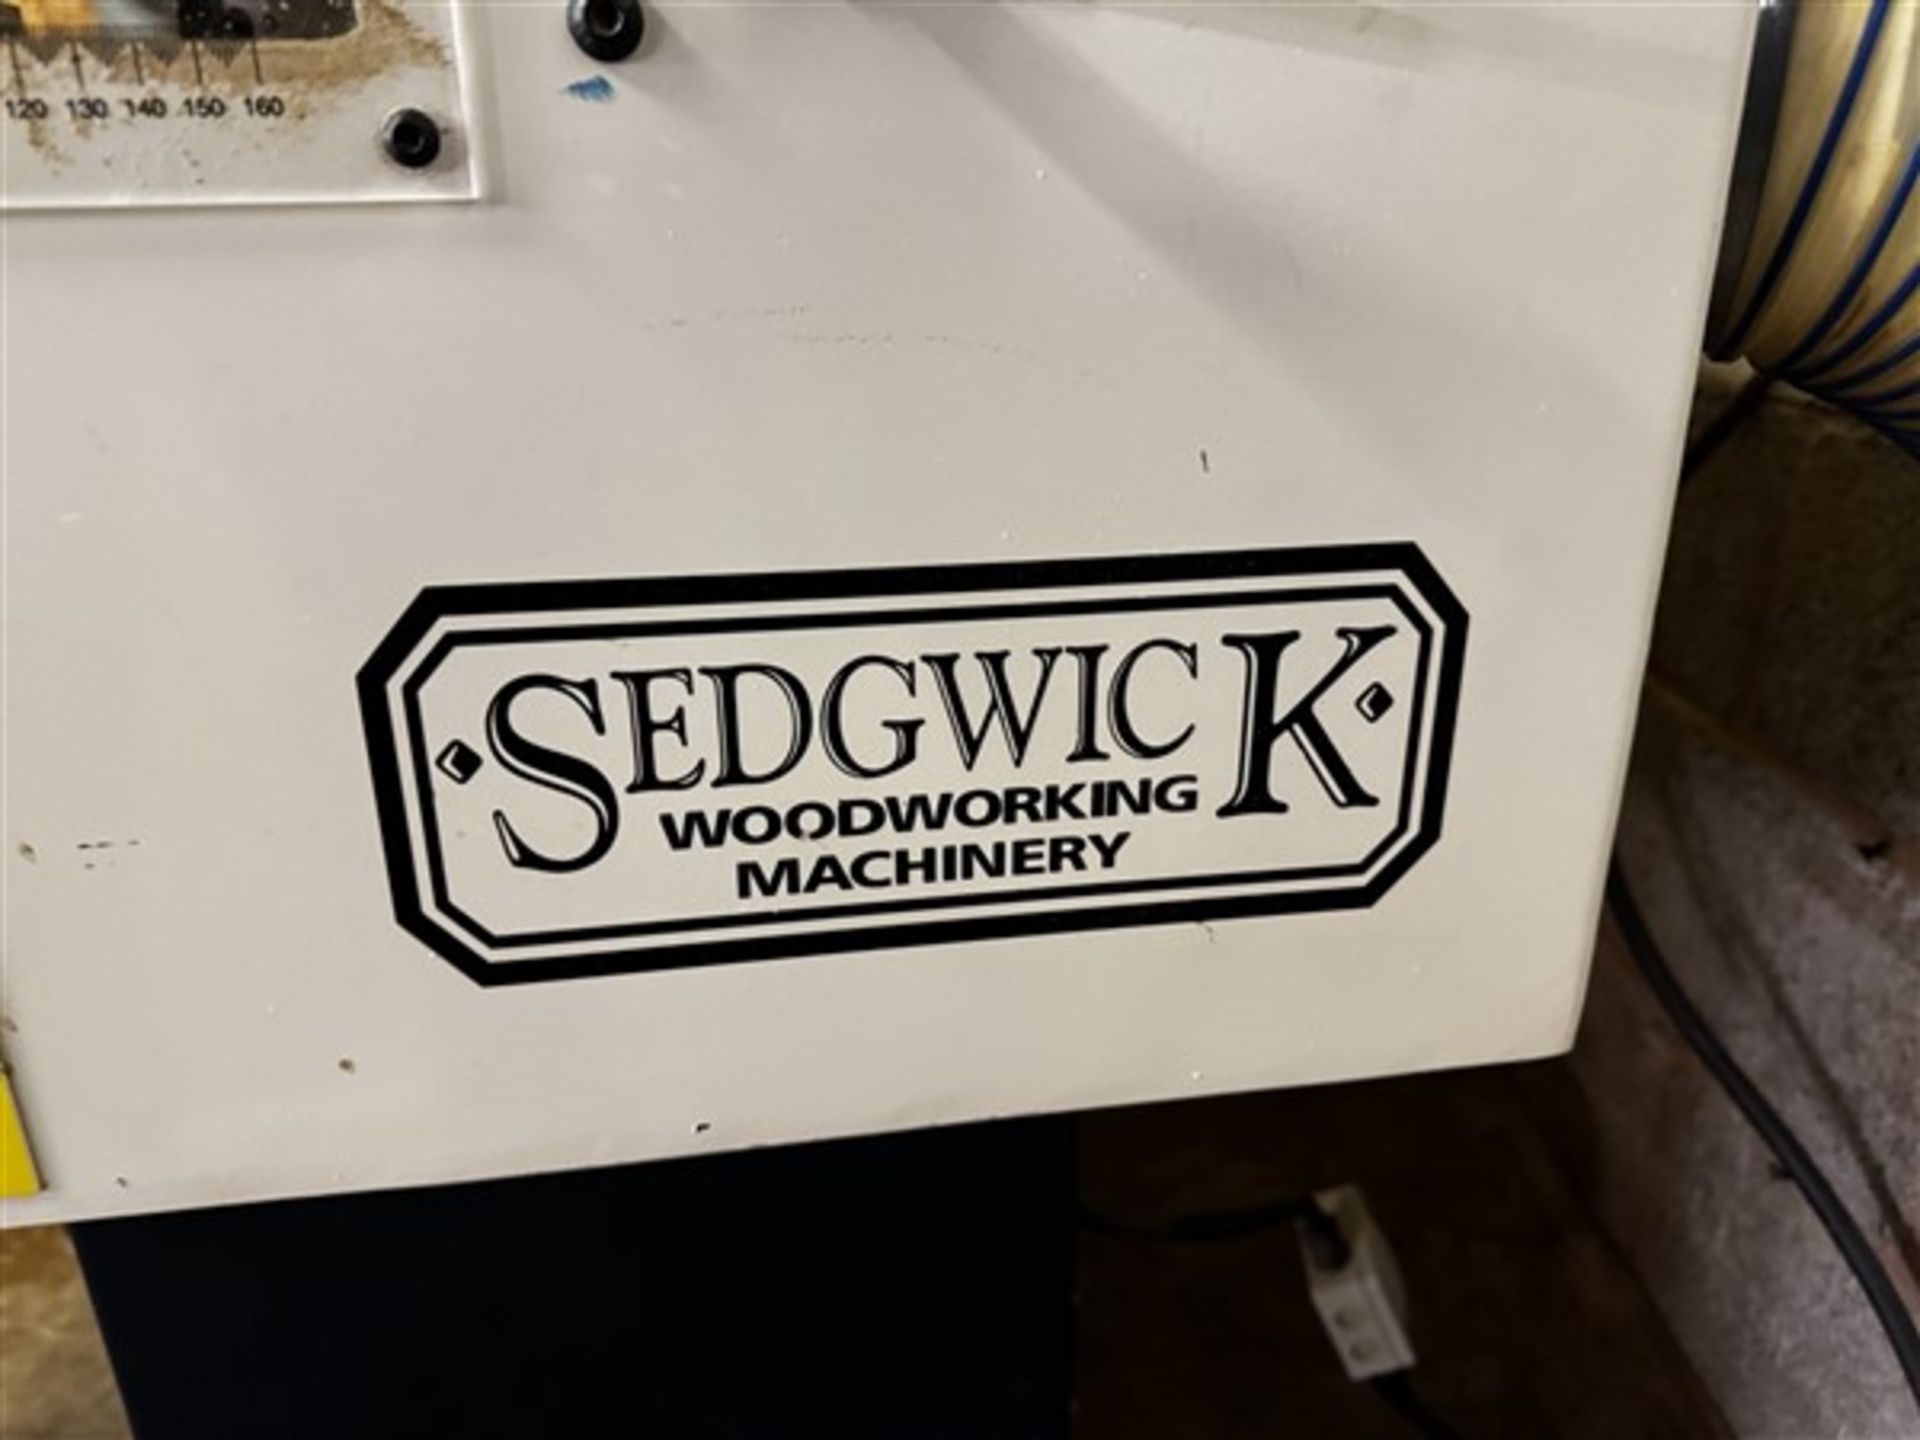 Sedgwick single sided tenoner machine, 3 phase - Image 2 of 8